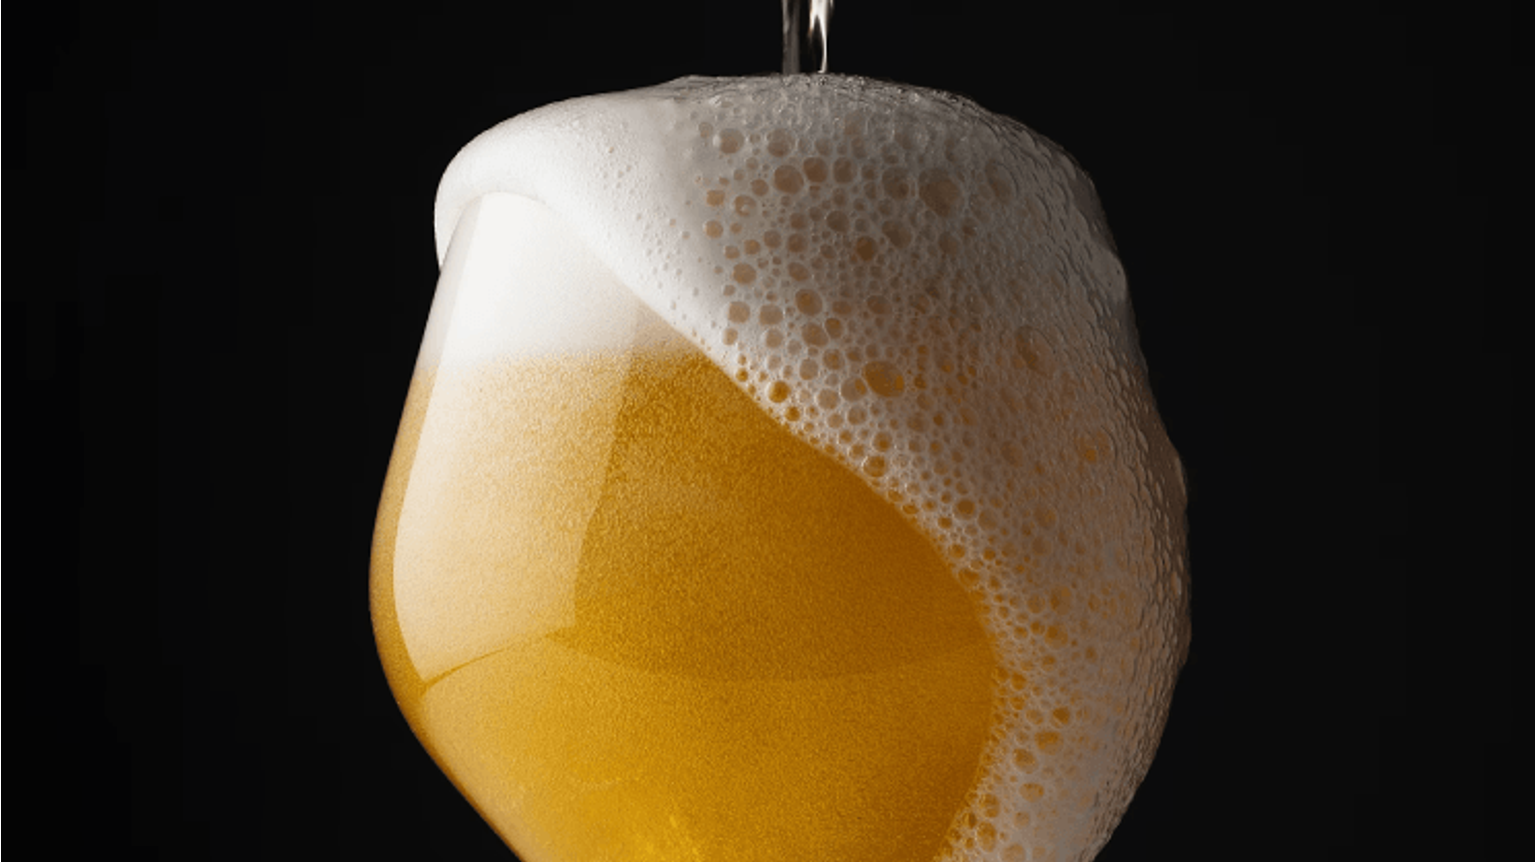 thumbnail for blog article named: La bière sans alcool, la nouvelle tendance de consommation dans le monde brassicole